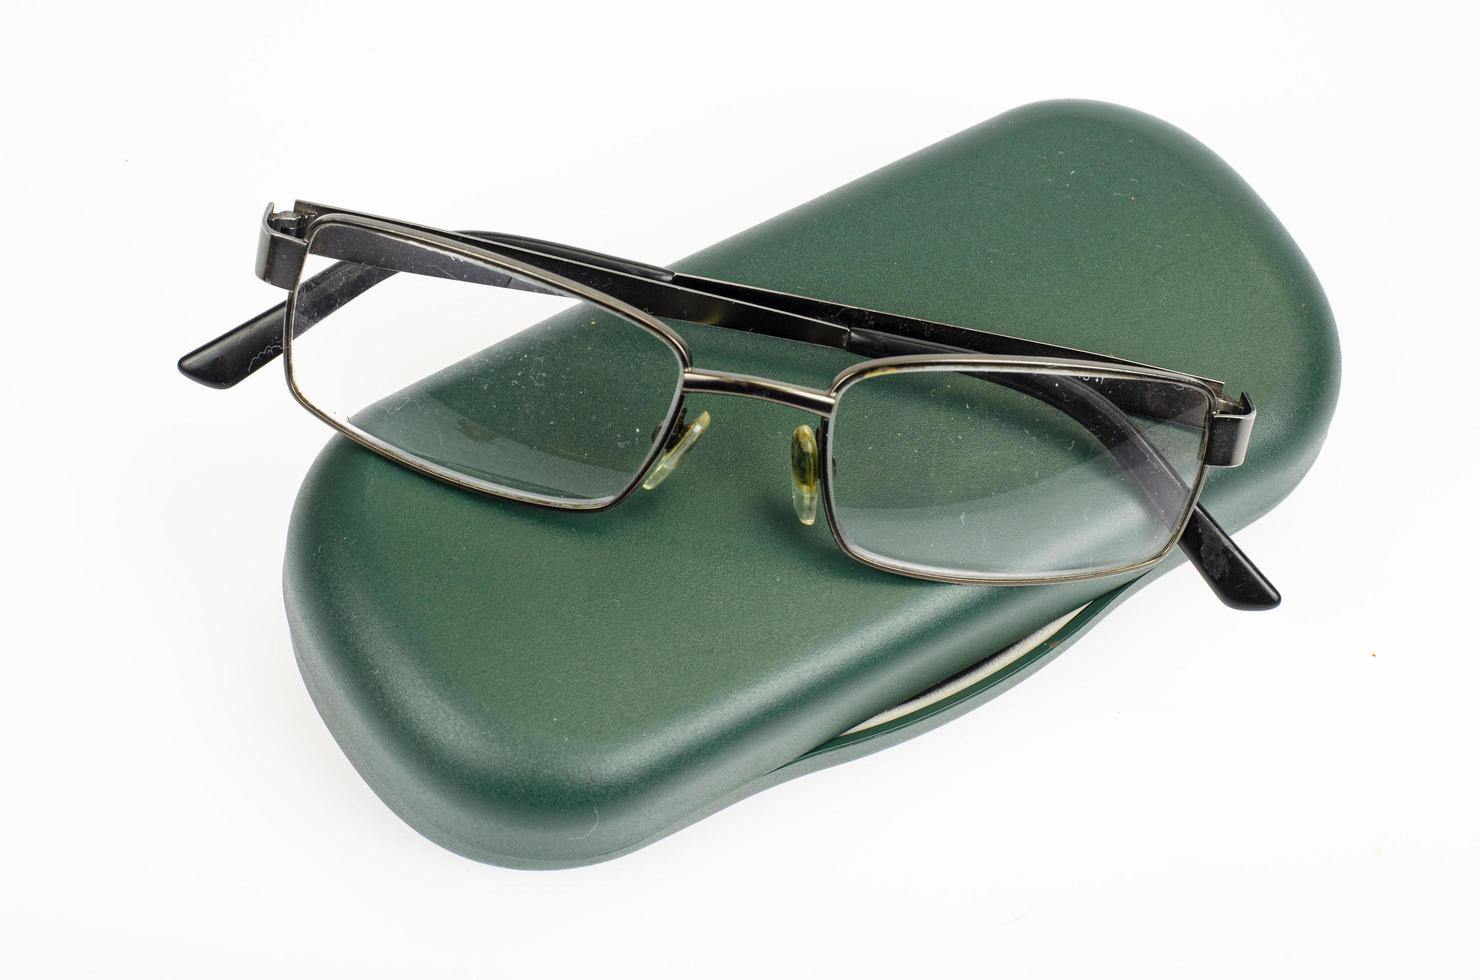 occhiali, gadget lente d'ingrandimento per la lettura. foto in studio